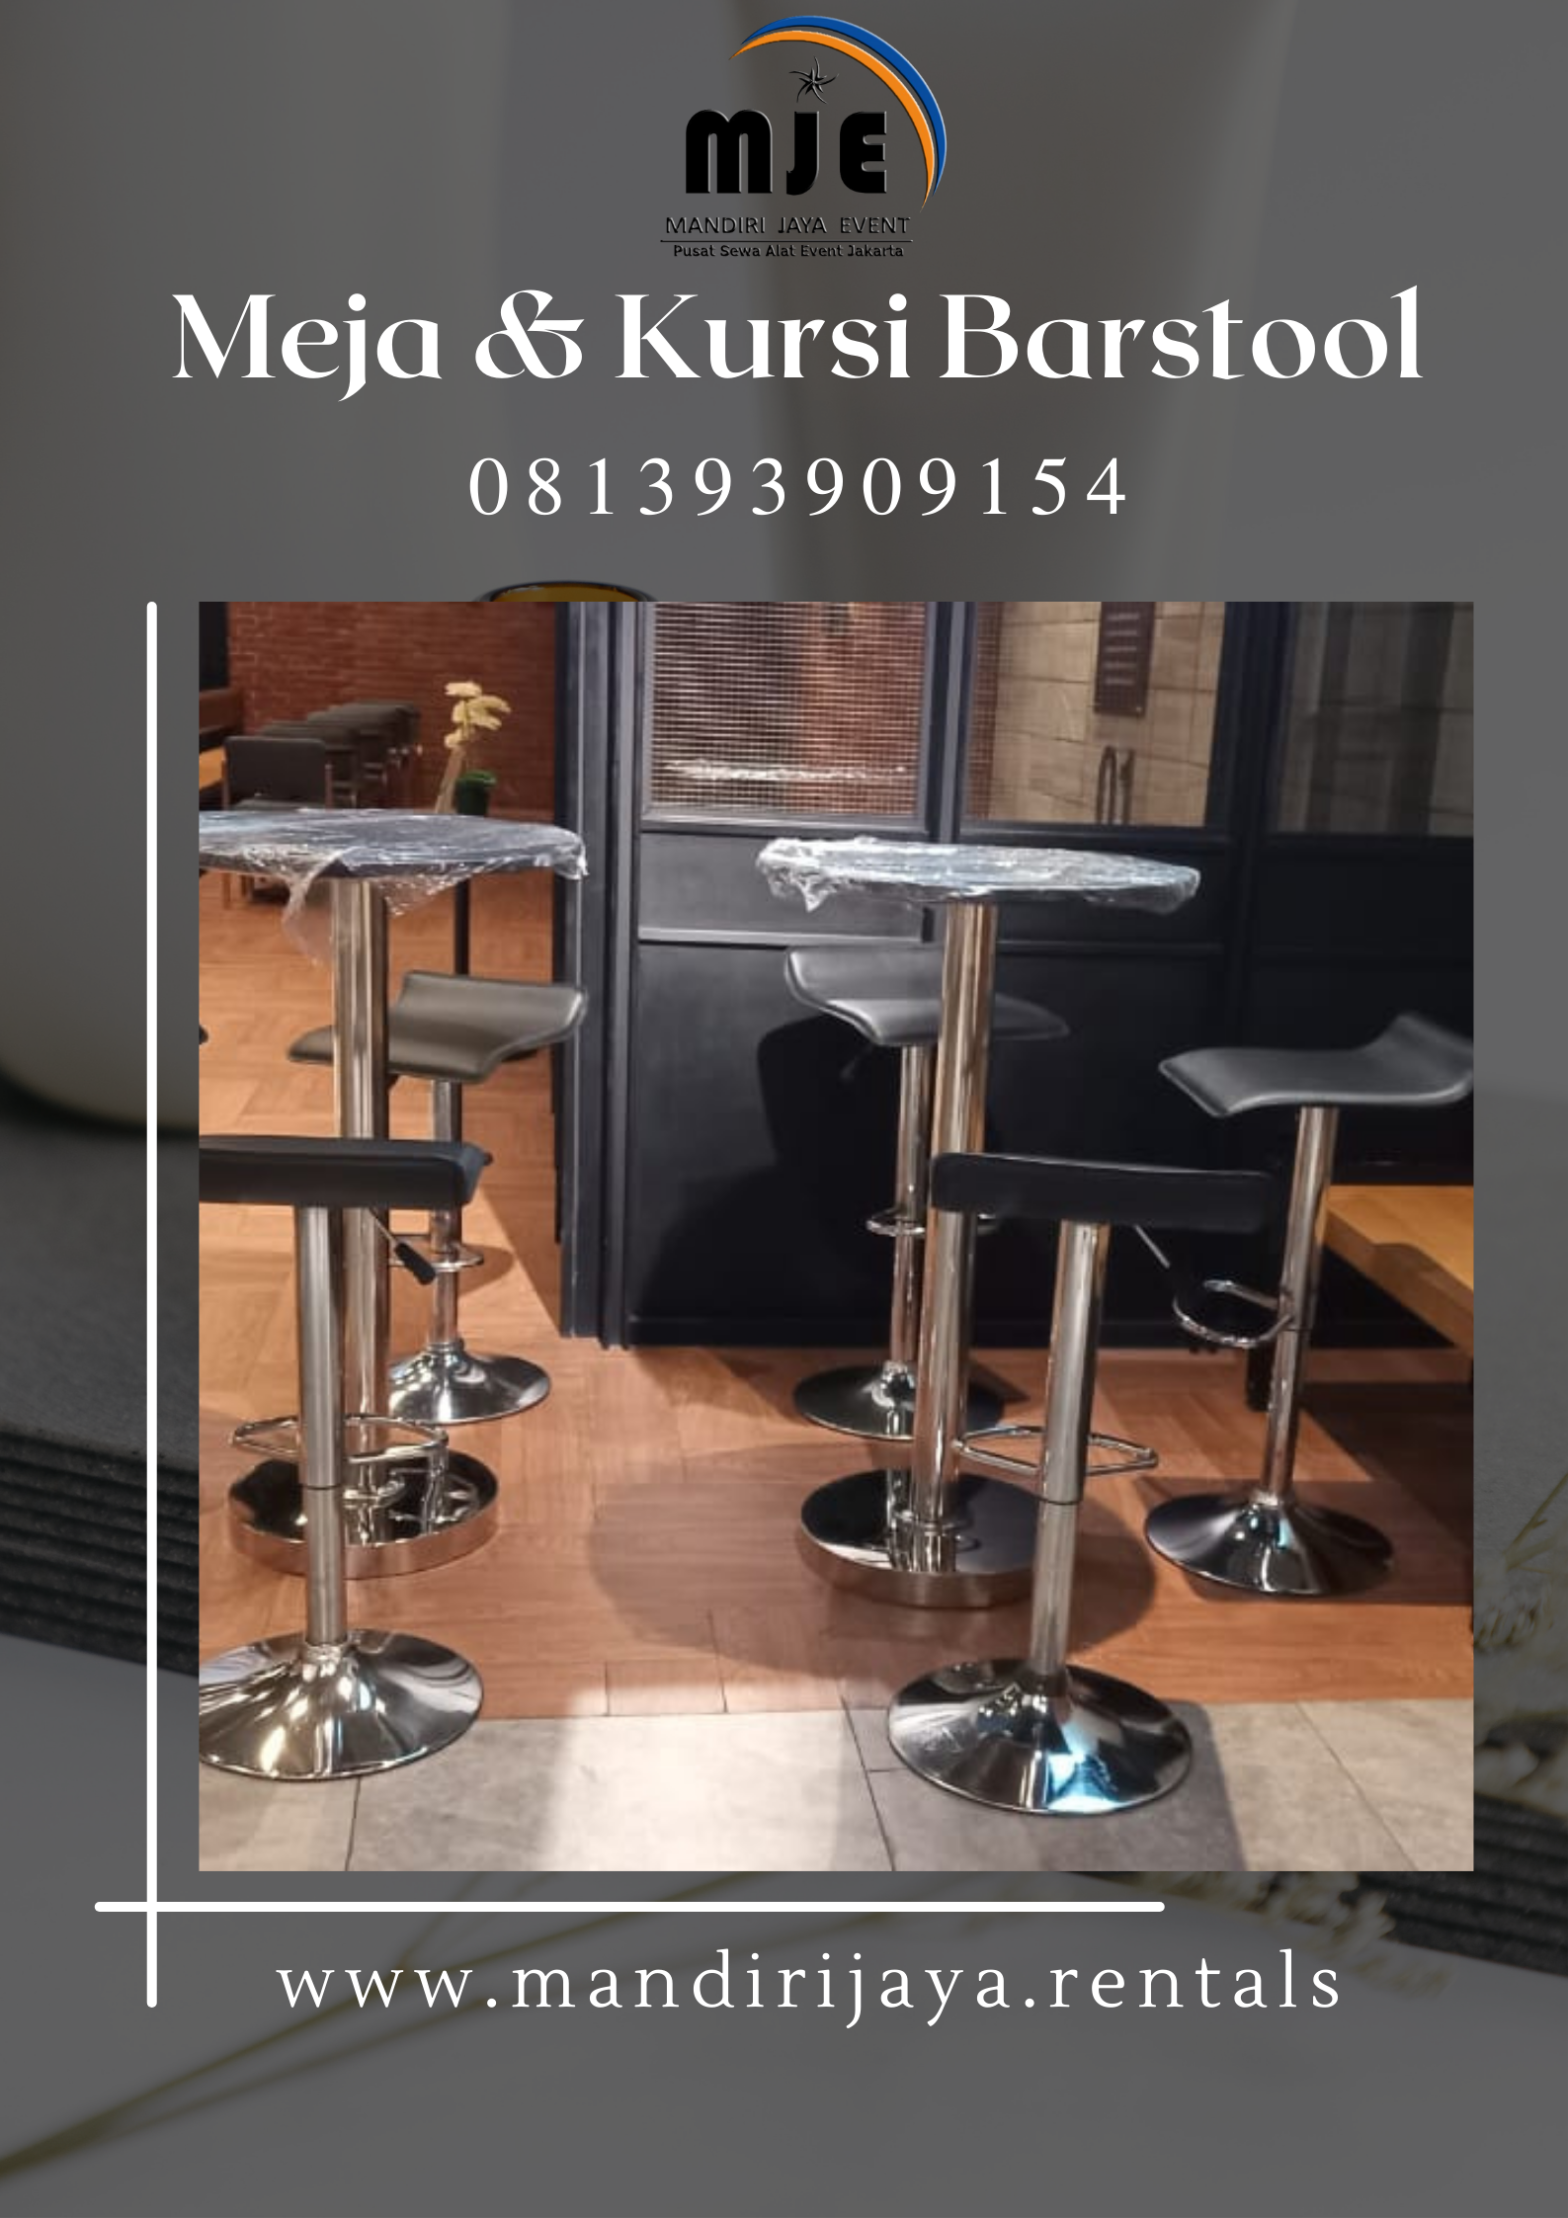 Sewa Meja Dan Kursi Barstool Rawasari Cempaka Putih Jakarta Pusat